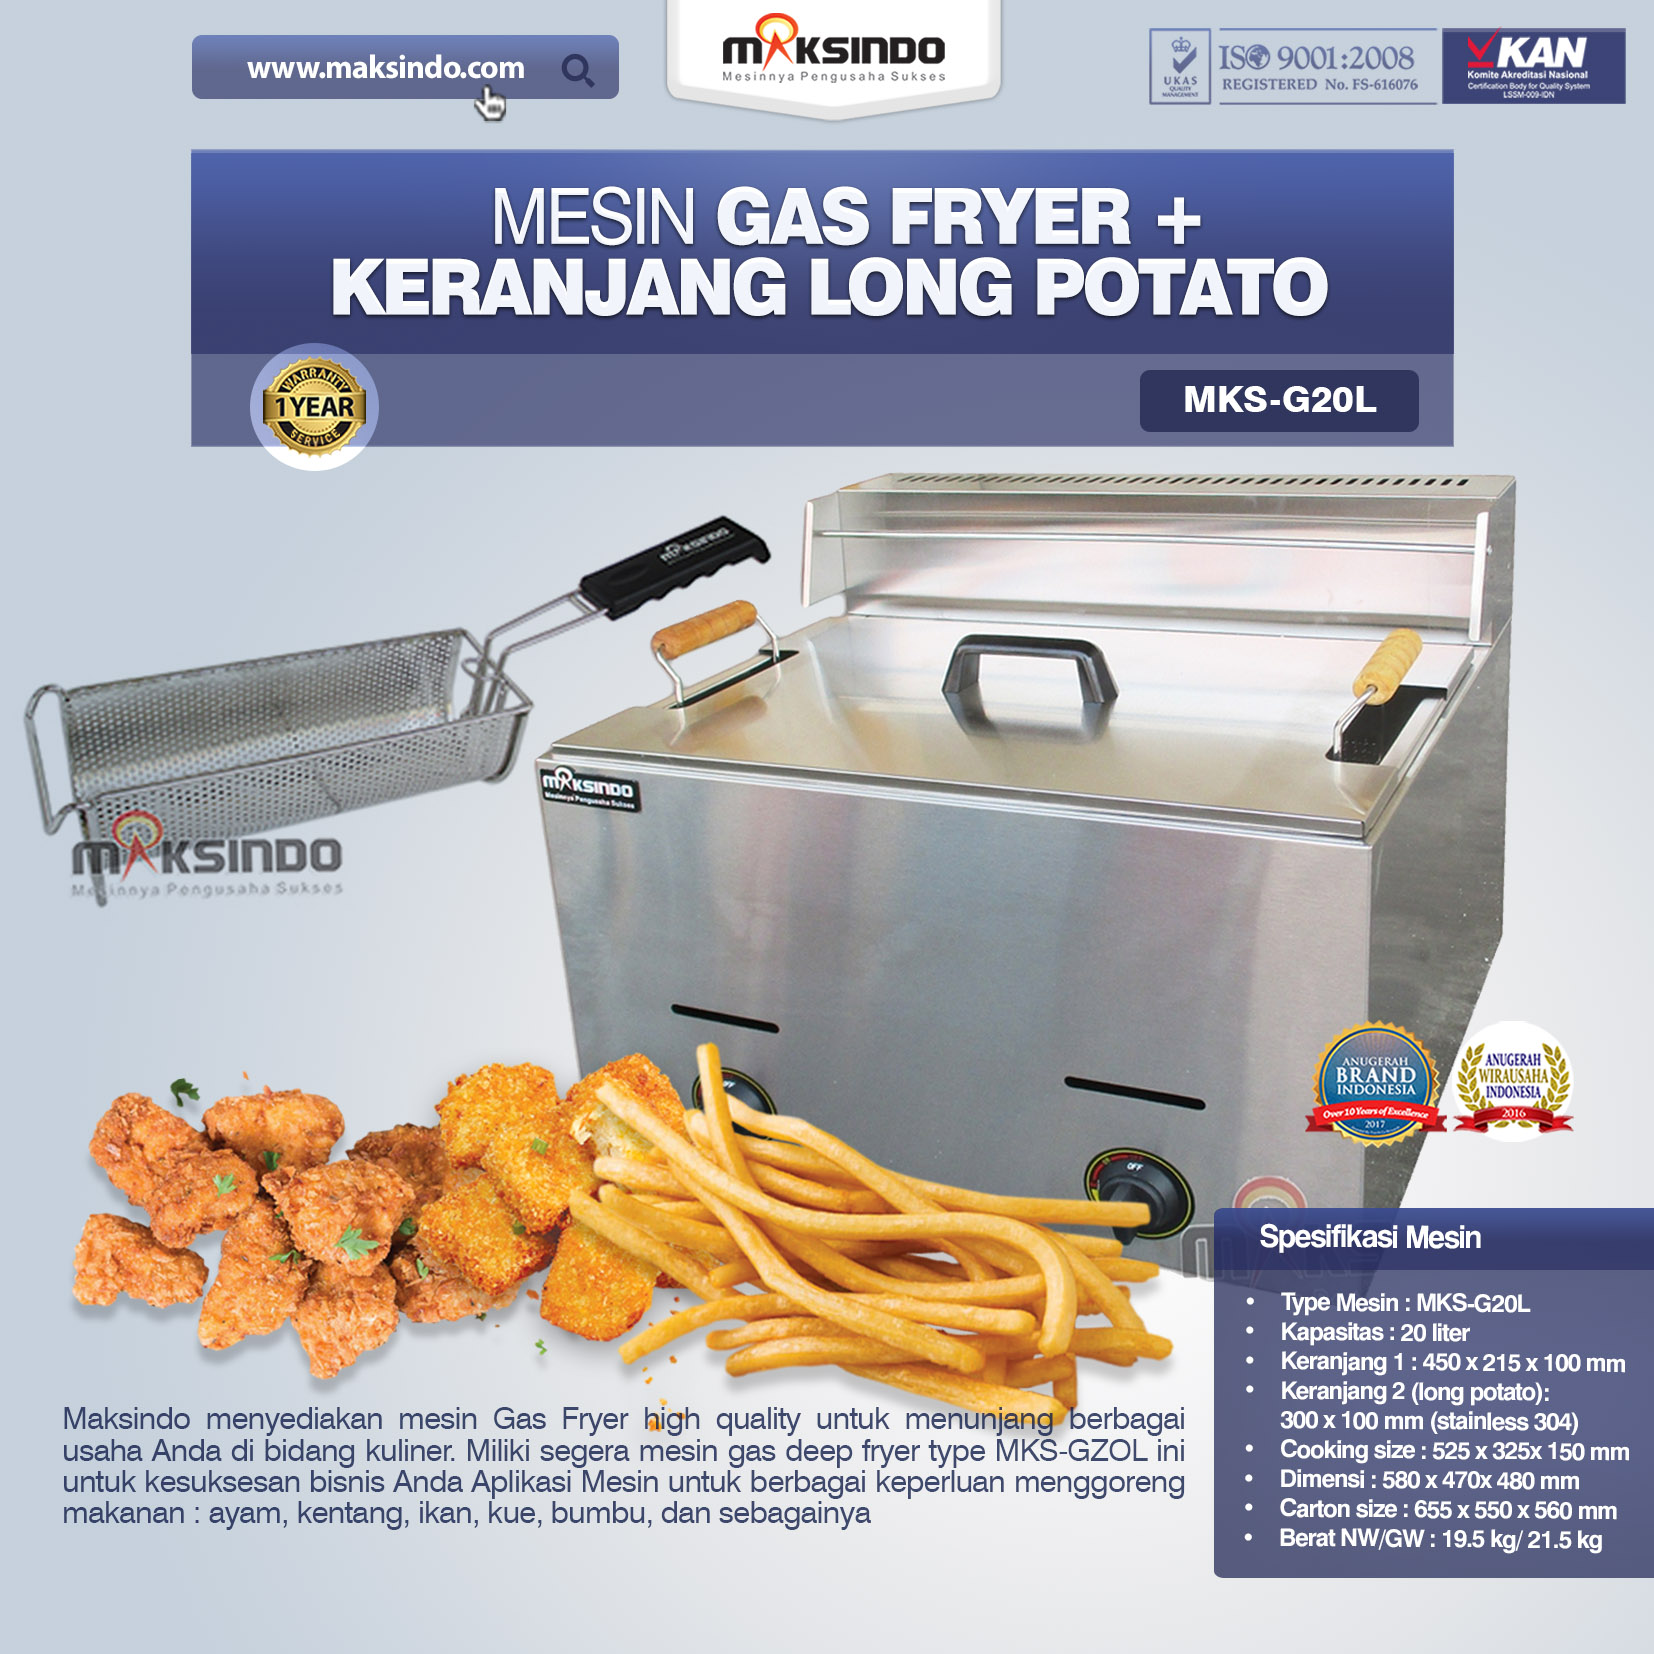 Jual Mesin Gas Fryer MKS-G20L + Keranjang di Bandung